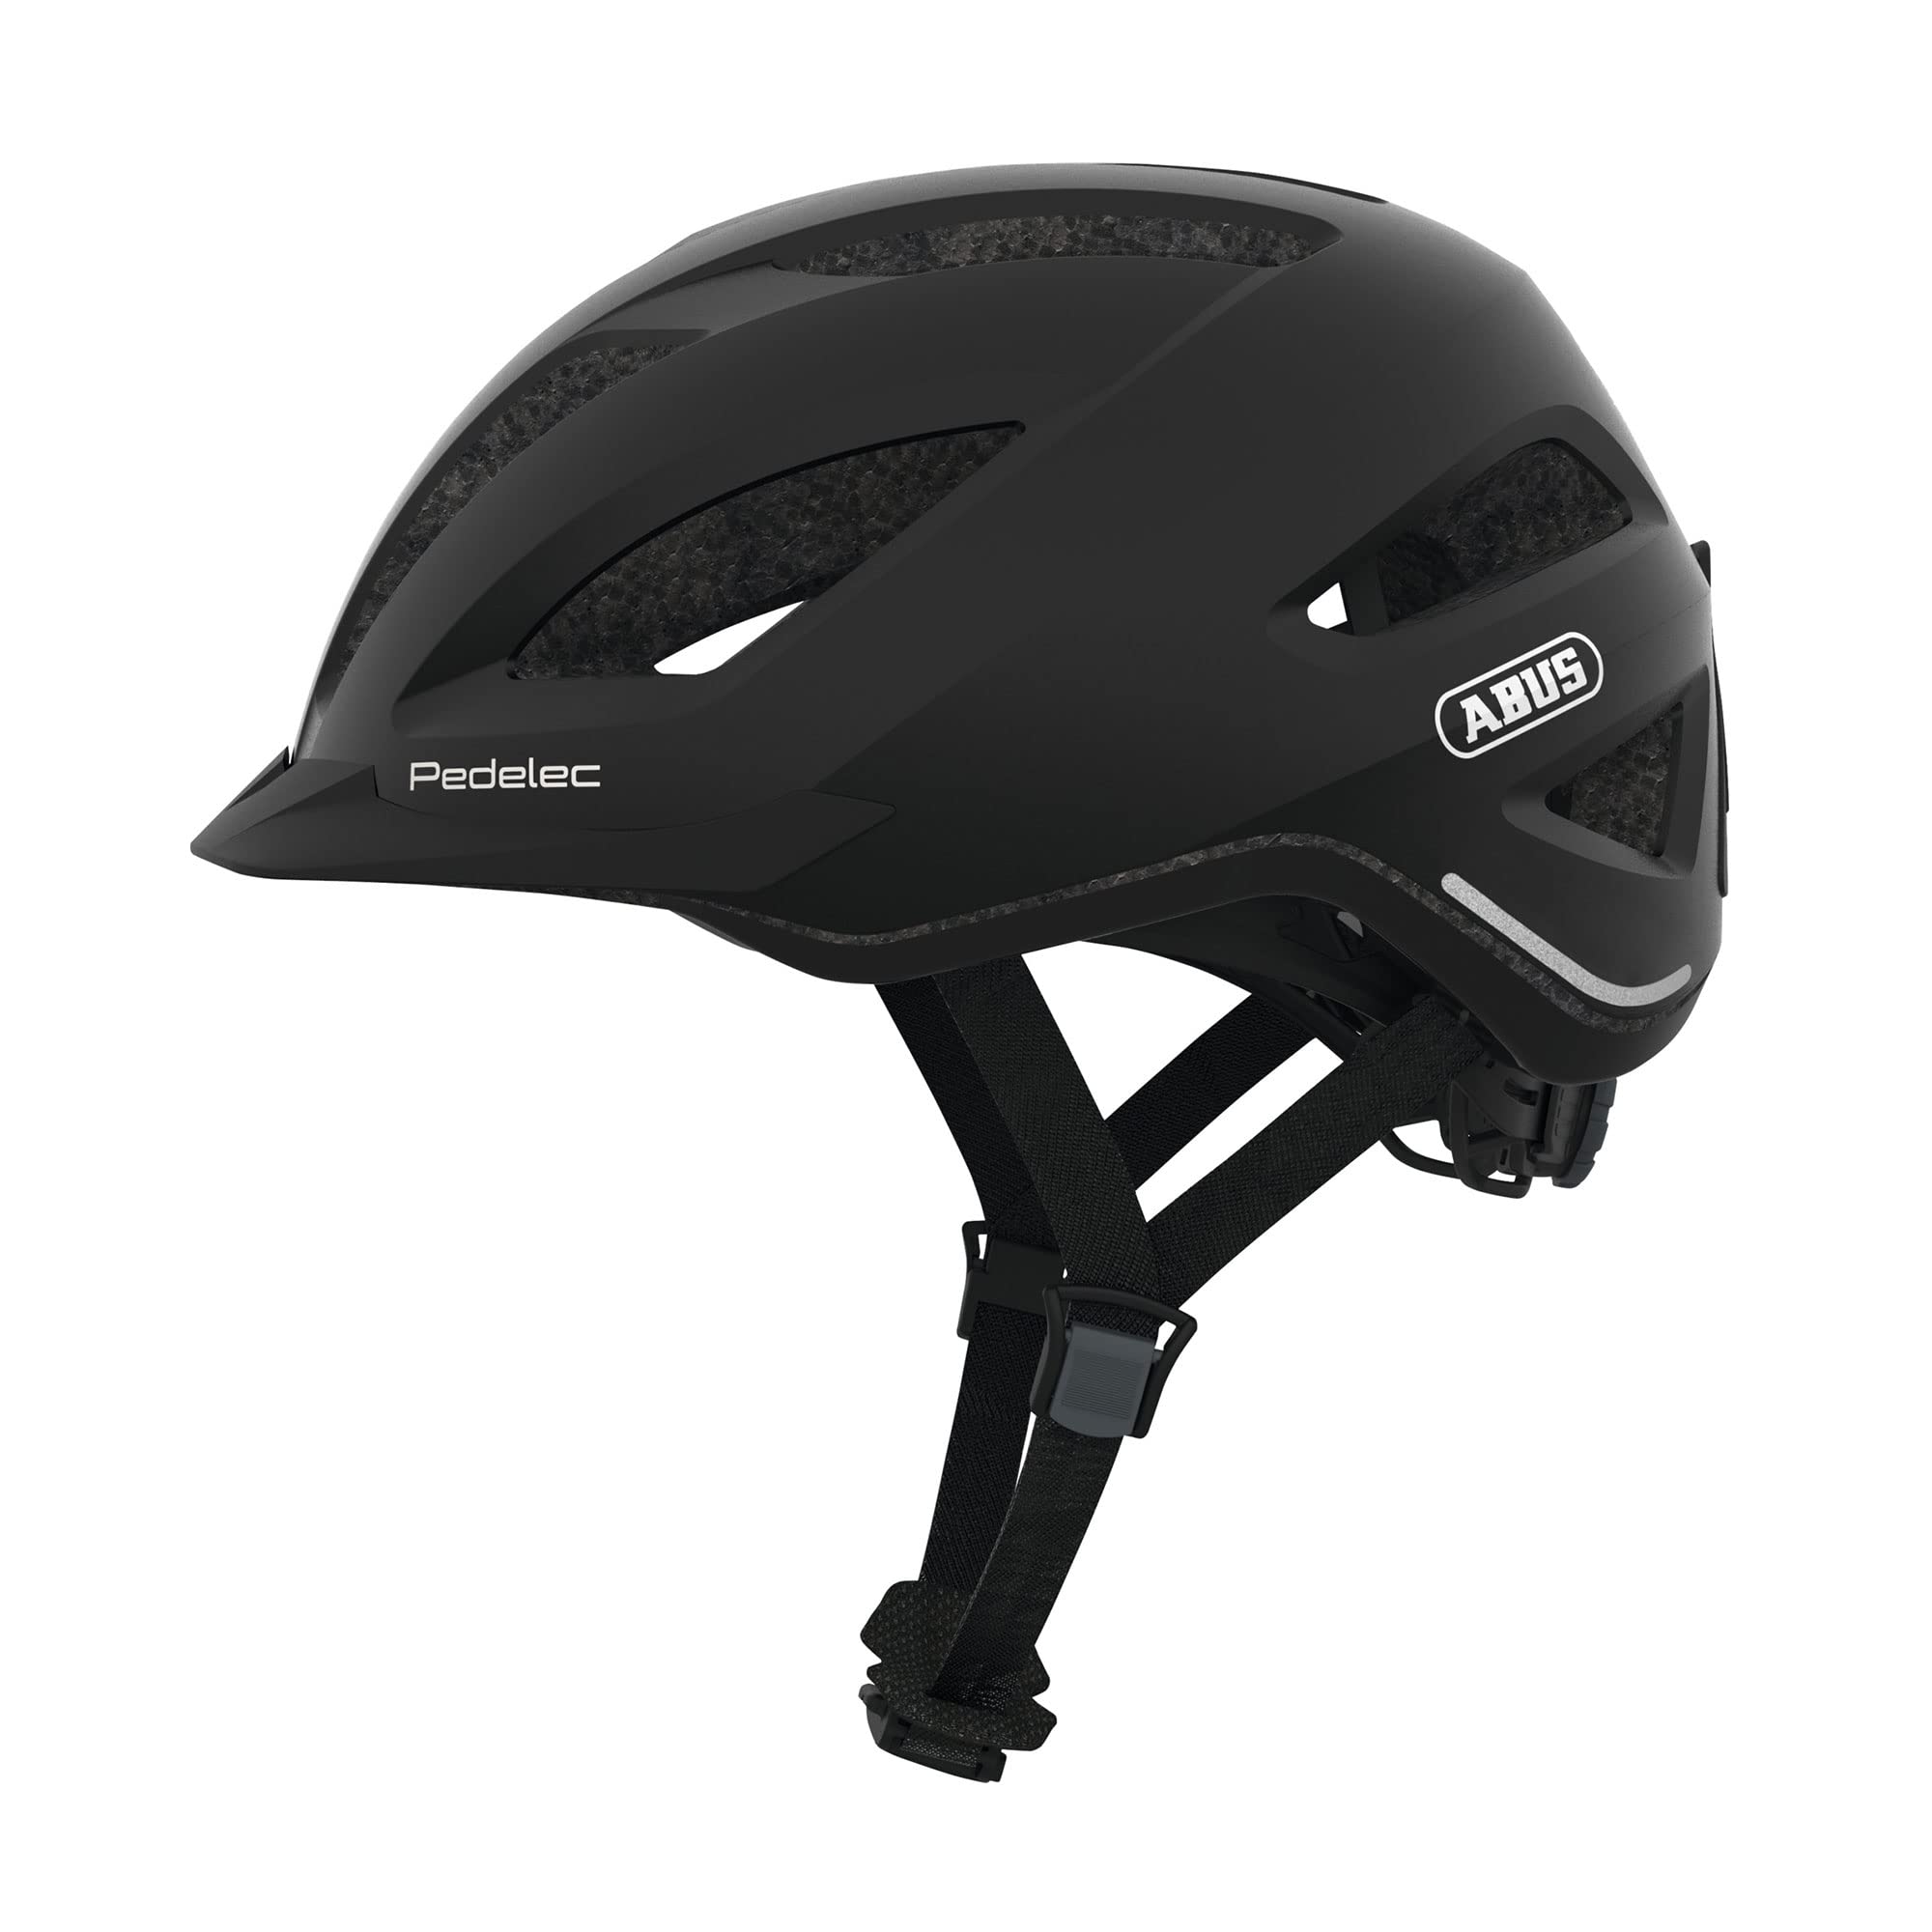 ABUS City-Helm Pedelec 1.1 - Fahrradhelm mit Rücklicht für den Stadtverkehr - für Damen und Herren - Schwarz, Größe L